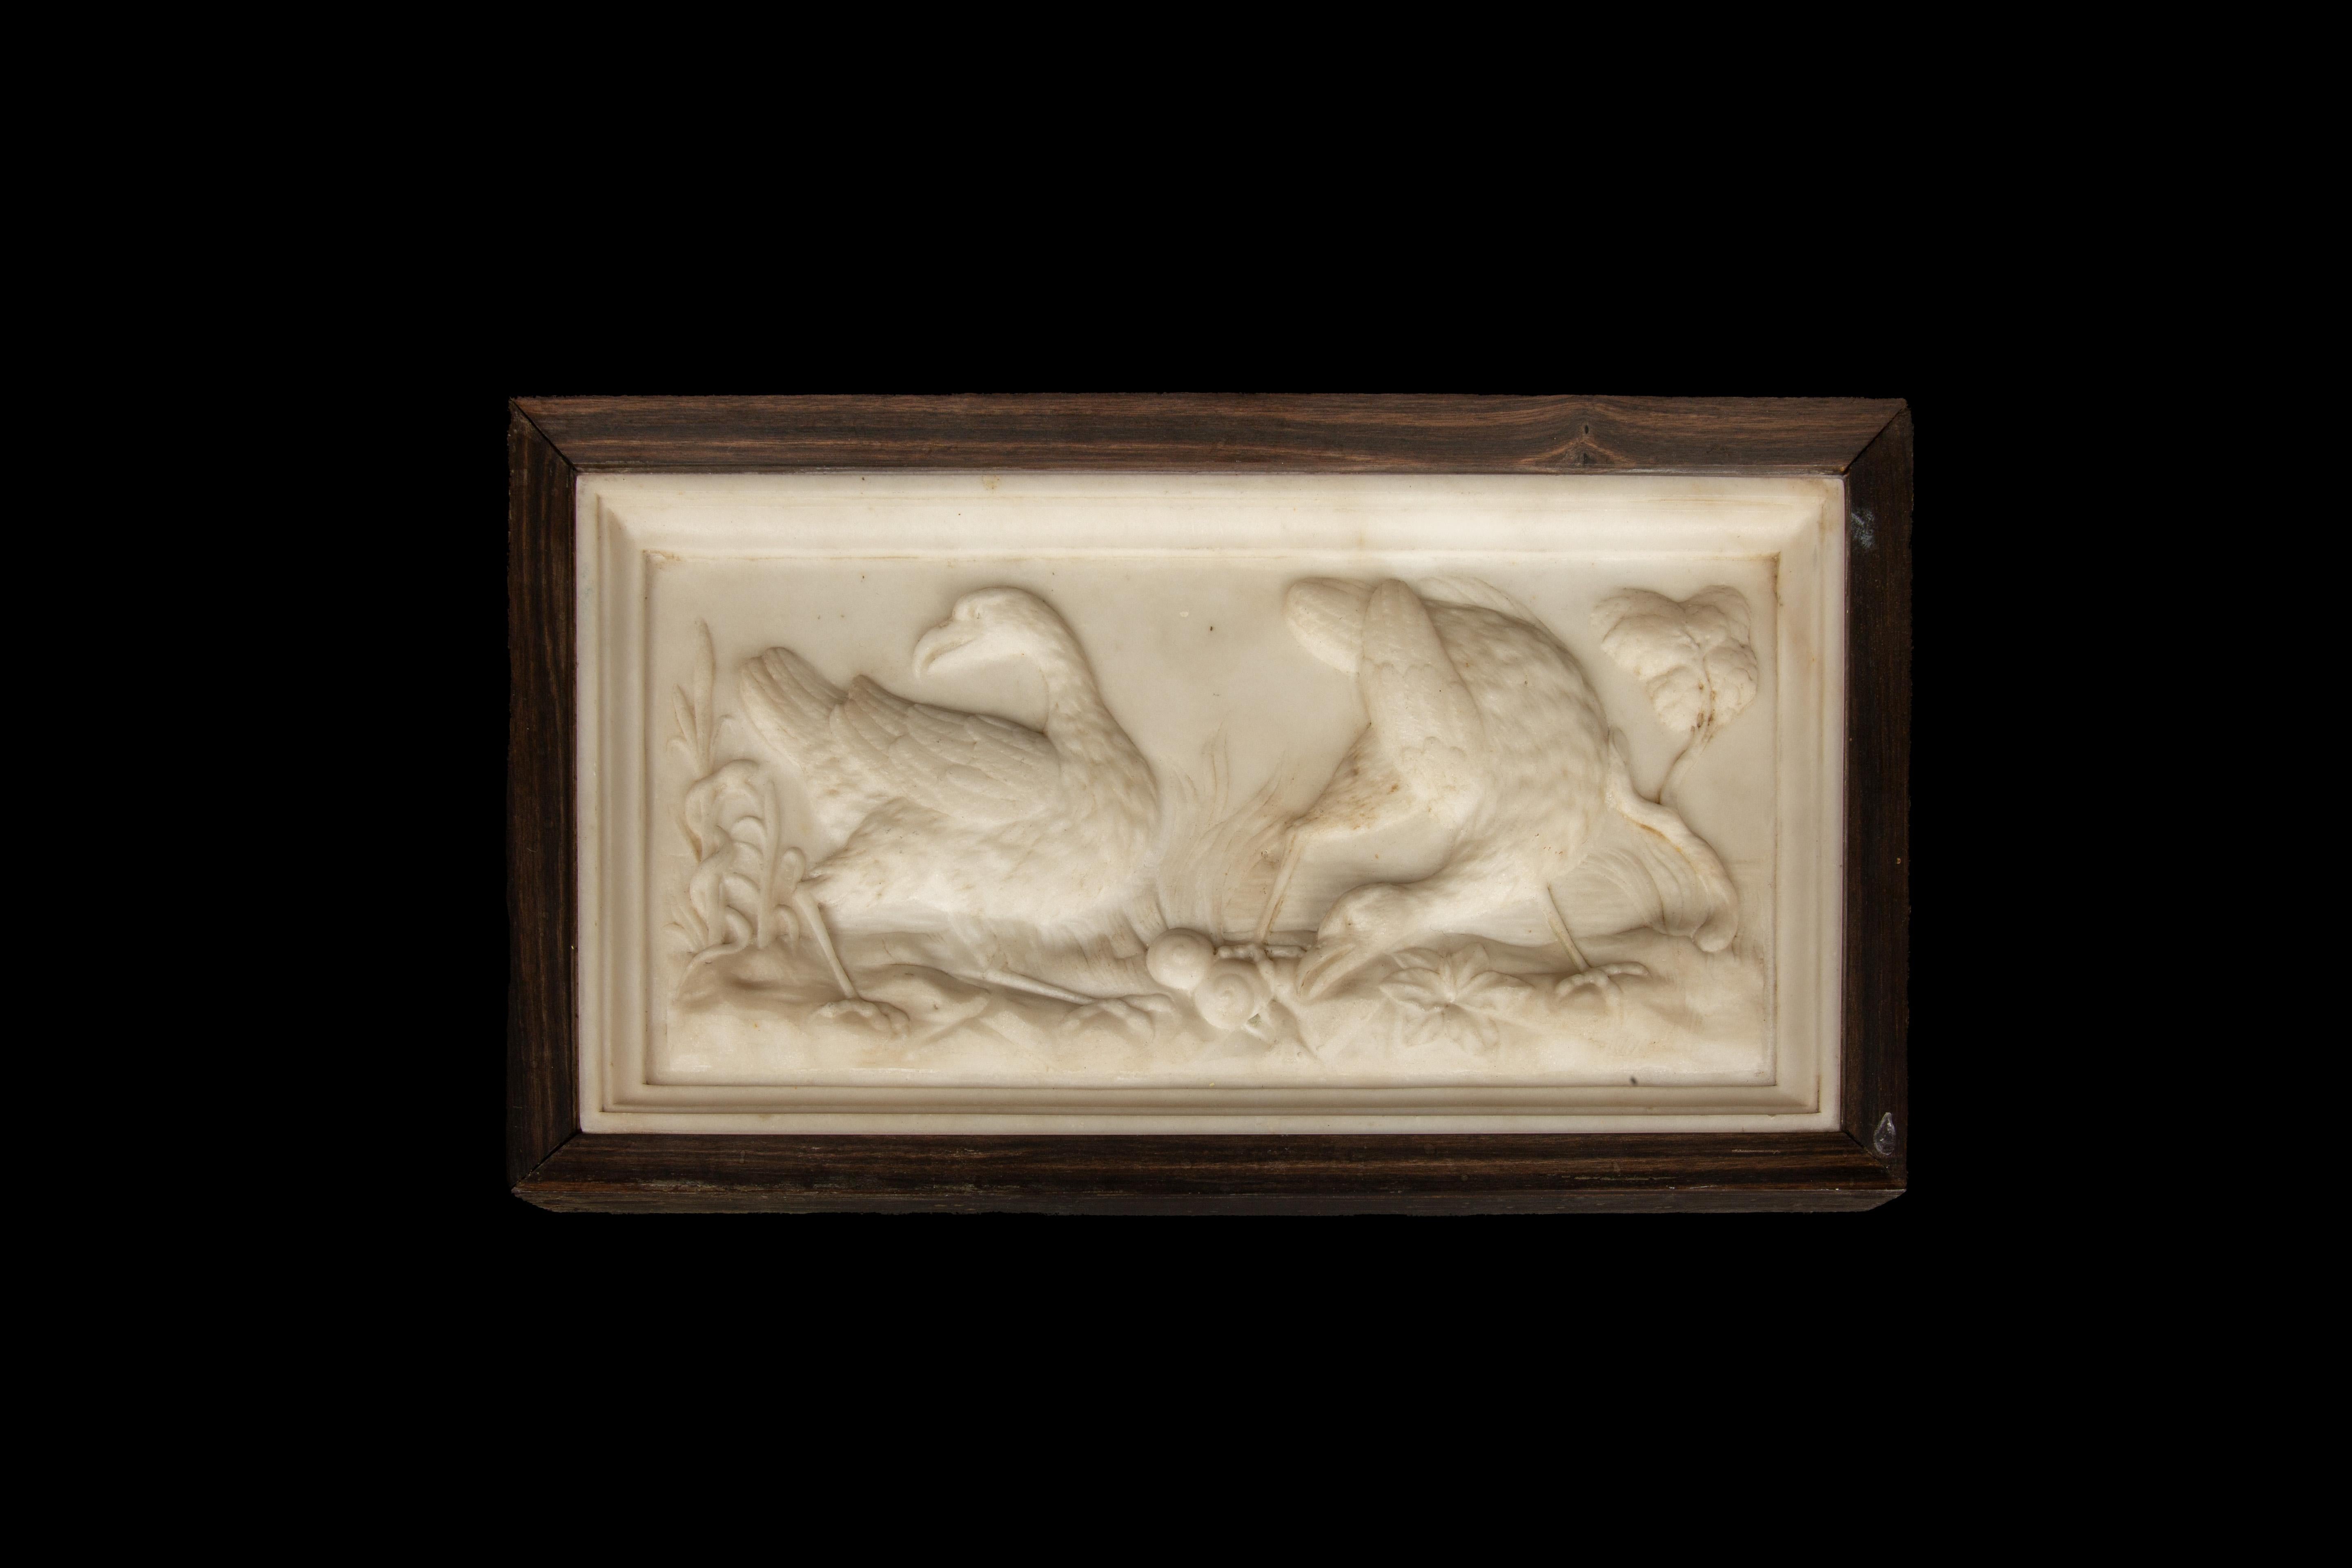 Exquise plaque en relief en marbre italien du XIXe siècle, méticuleusement sculptée à la main pour capturer l'essence gracieuse d'un couple d'outardes majestueuses au milieu d'une végétation luxuriante. L'attention méticuleuse portée aux détails de